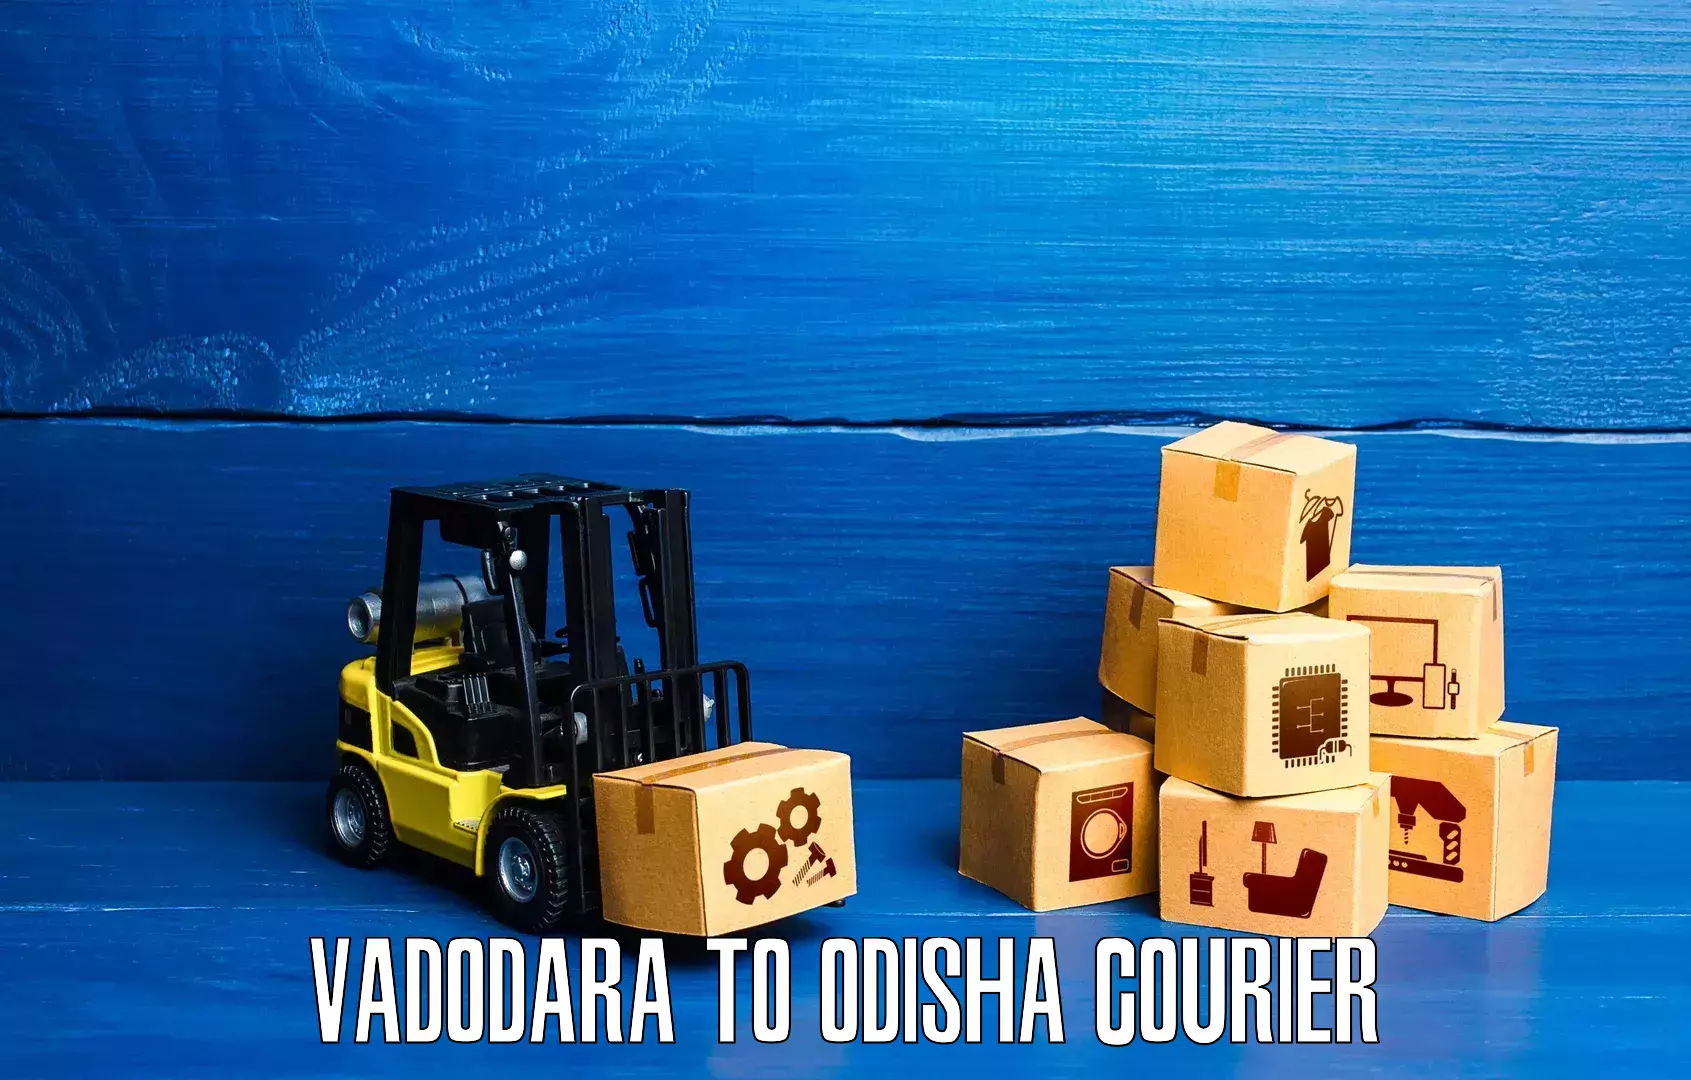 Fast delivery service Vadodara to Saintala